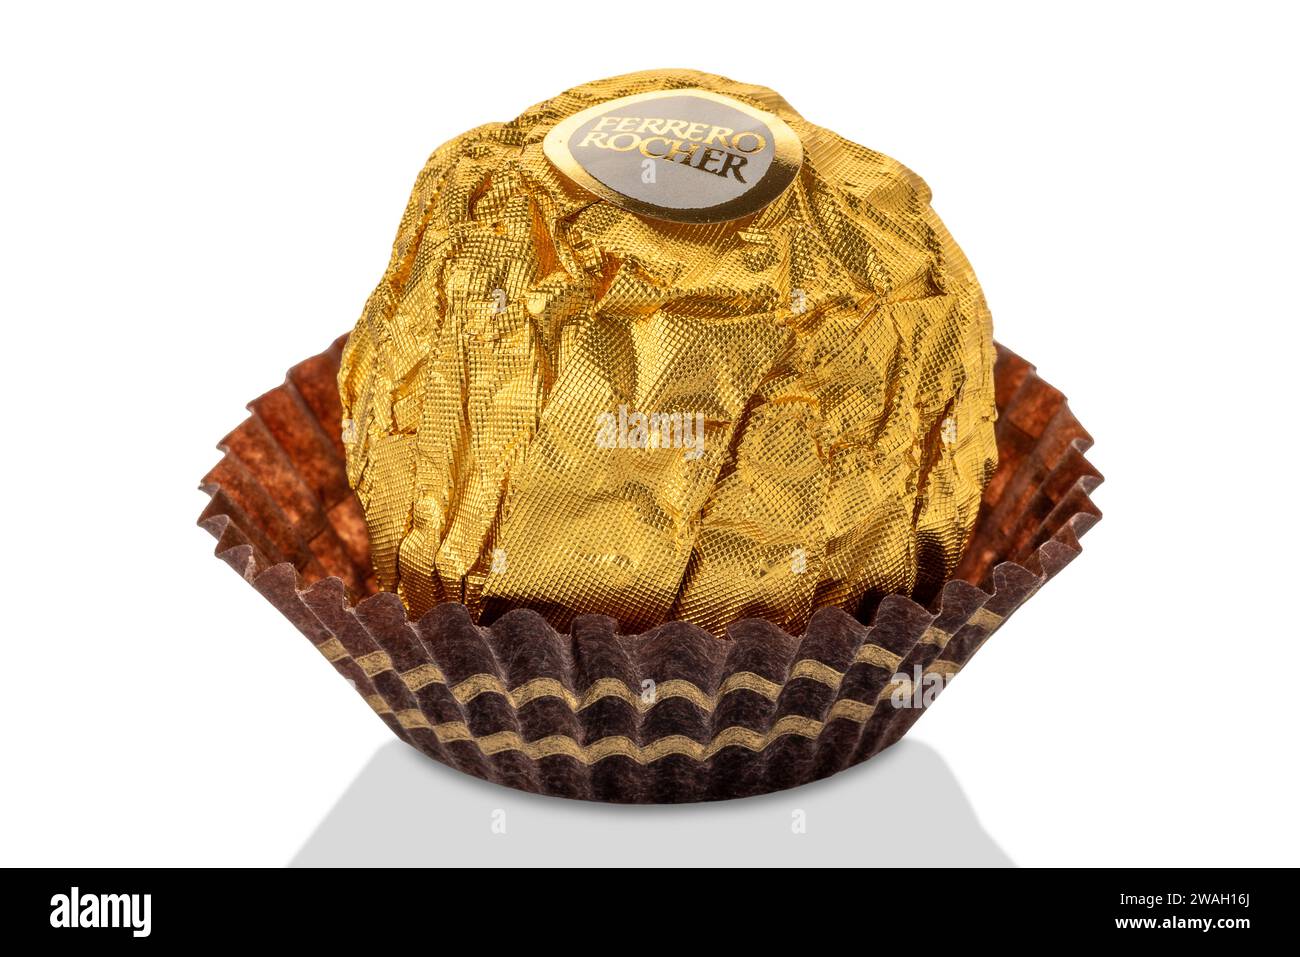 Gâteaux au chocolat de Noël Ferrero Rocher.Muffins à la crème au chocolat  Photo Stock - Alamy